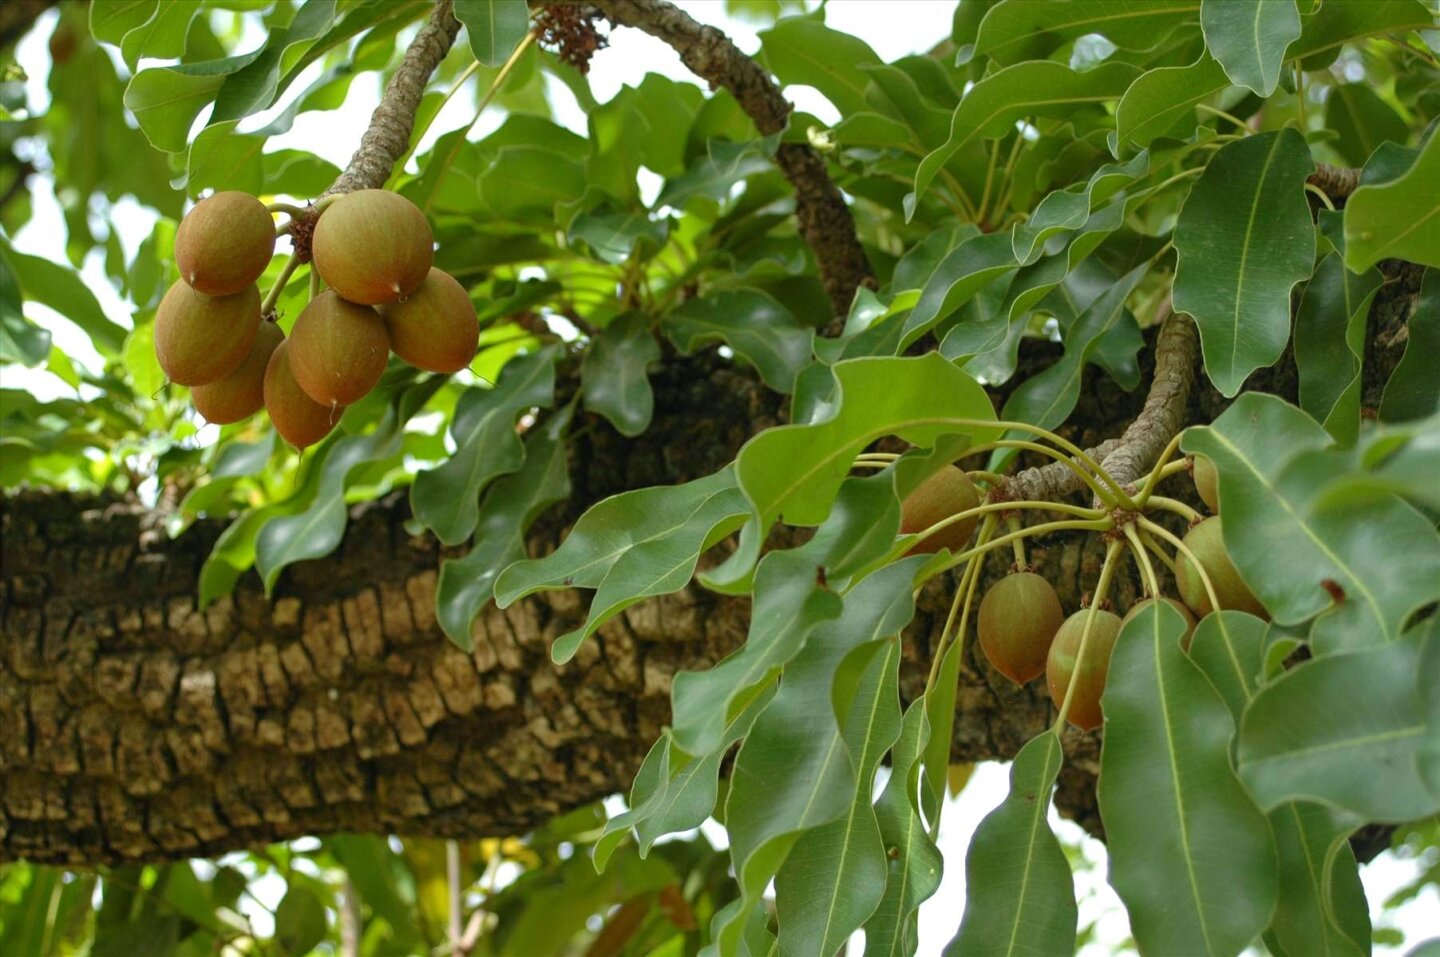 Sheabutter - Pflanzenfett aus den Früchten des Sheanussbaums